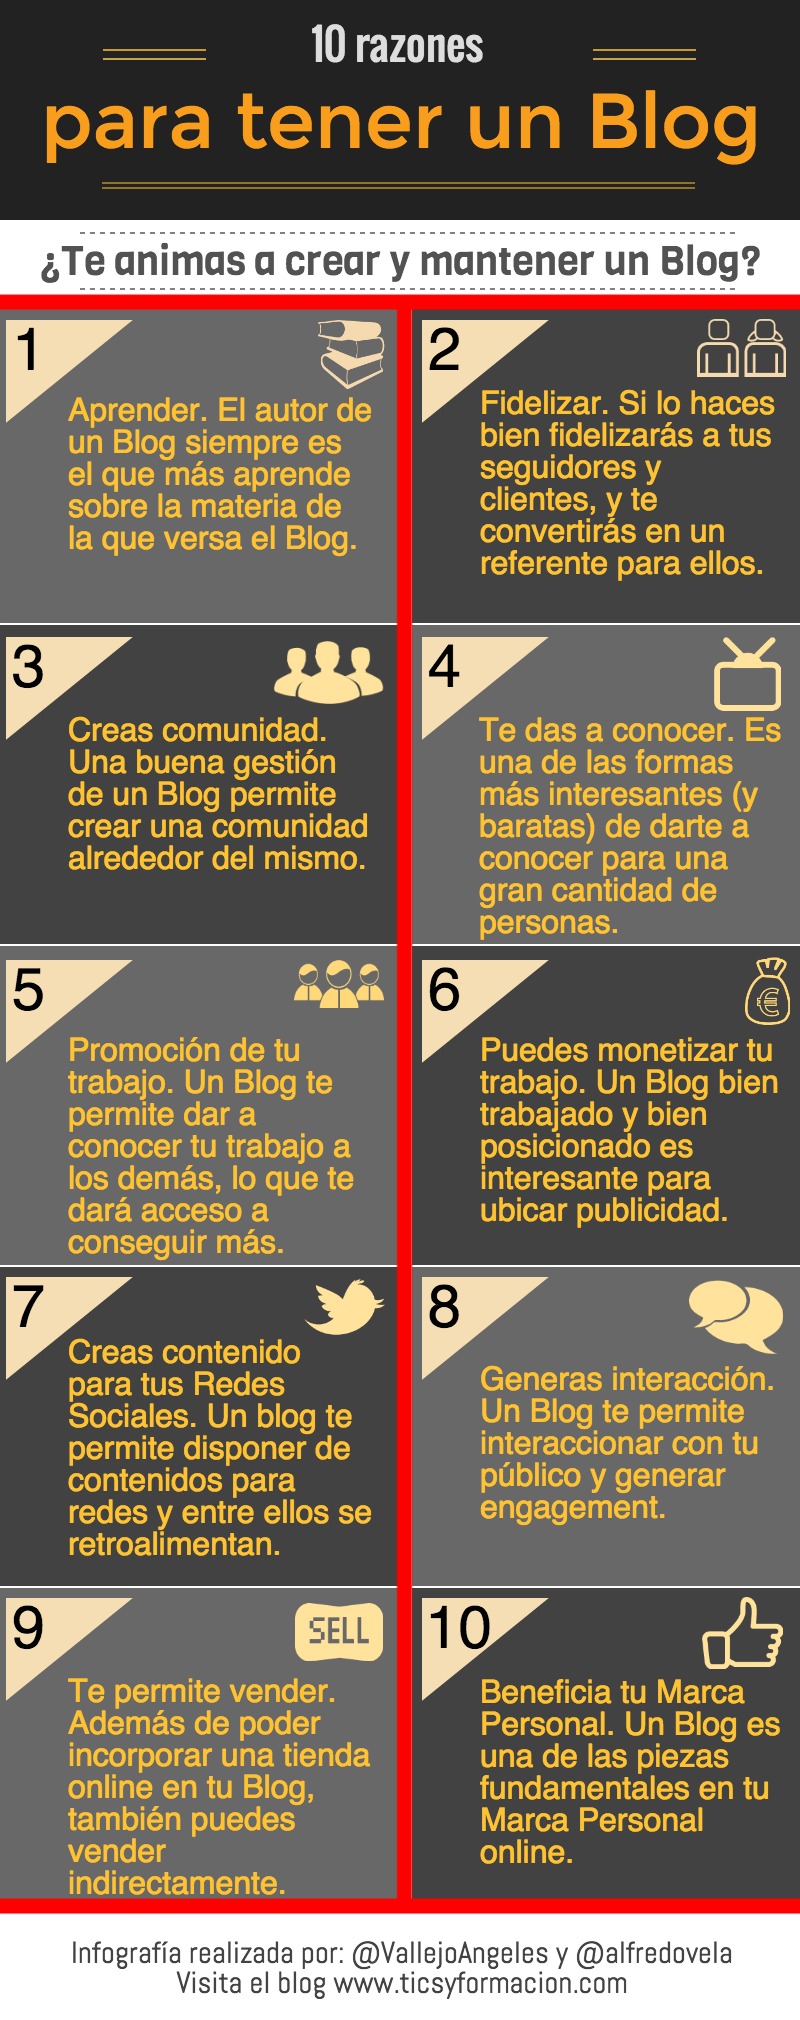 Infografía con diez razones para crear y mantener un blog